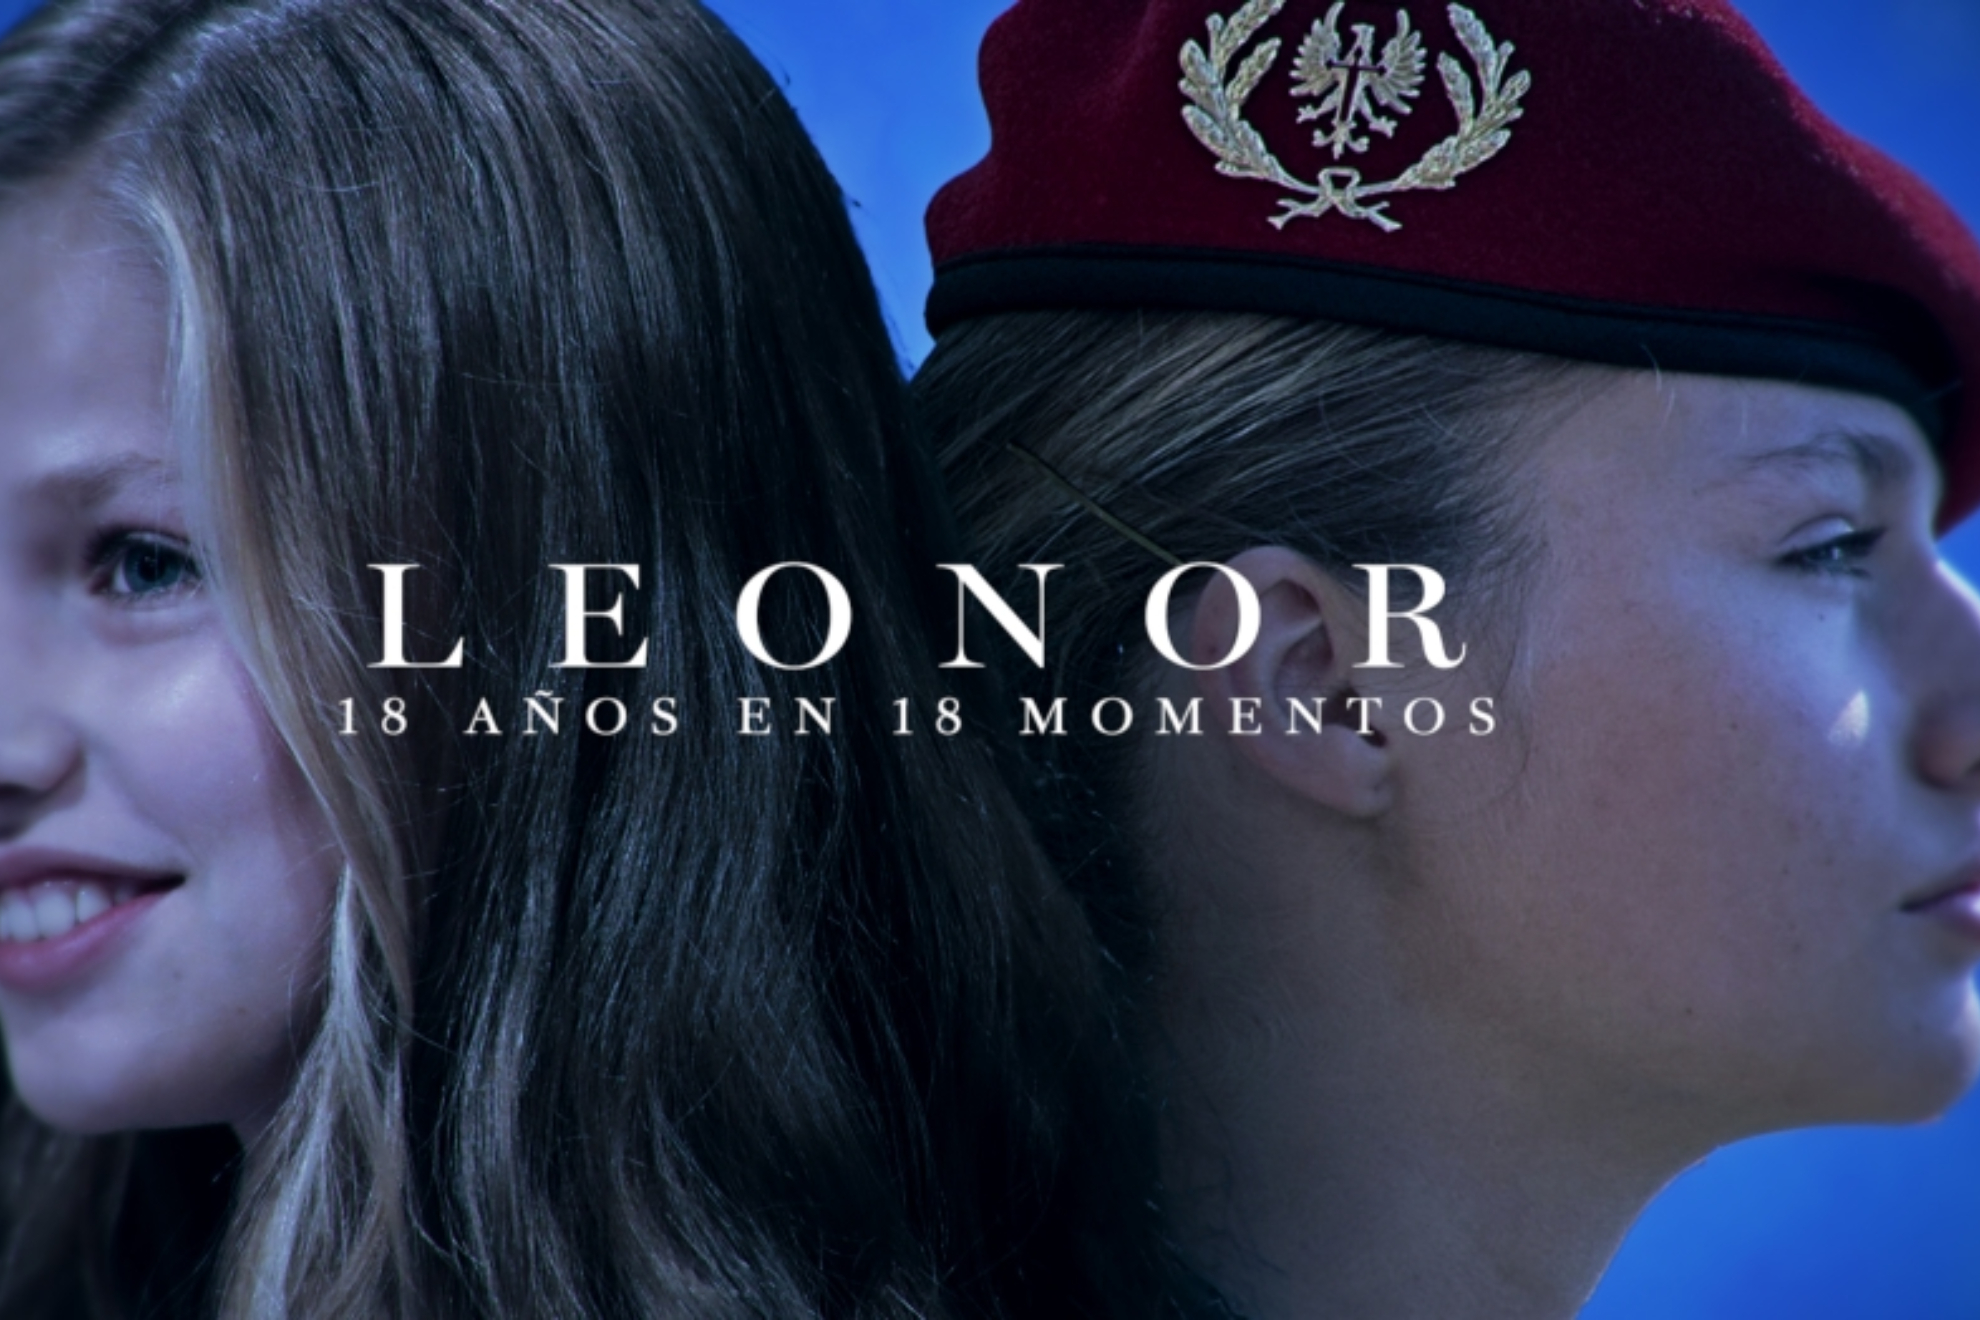 El documental Leonor, 18 aos en 18 momentos se estrena el 31 de octubre